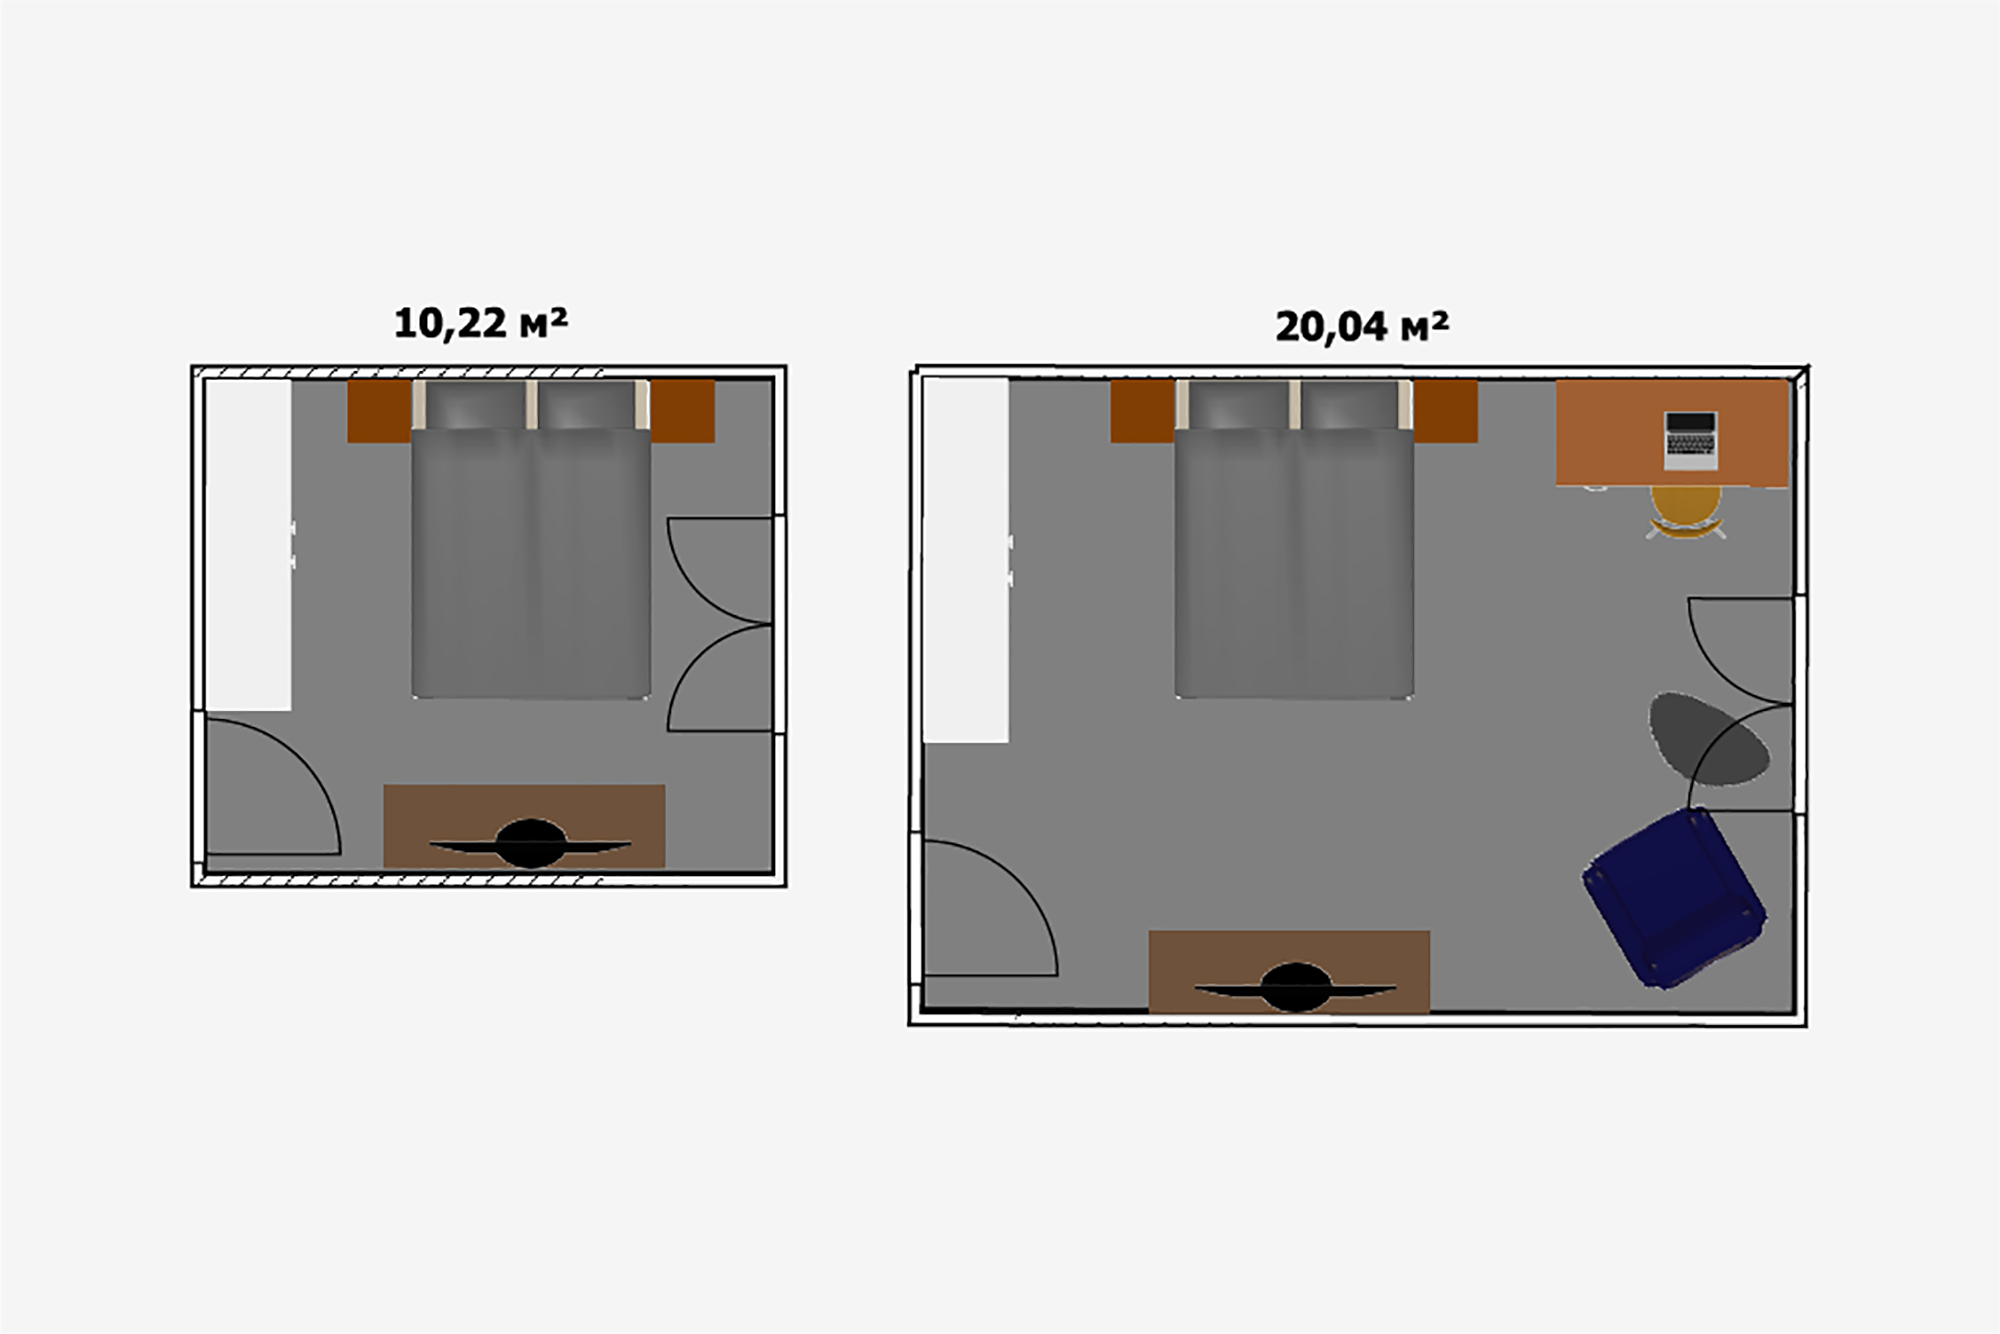 Нужно постараться, чтобы в двадцатиметровой спальне избавиться от ощущения пустоты. Если в комнате планируется только отдыхать, то будет достаточно и 10 м². На них уместится двуспальная кровать, пара тумбочек, бельевой комод с телевизором и шкаф